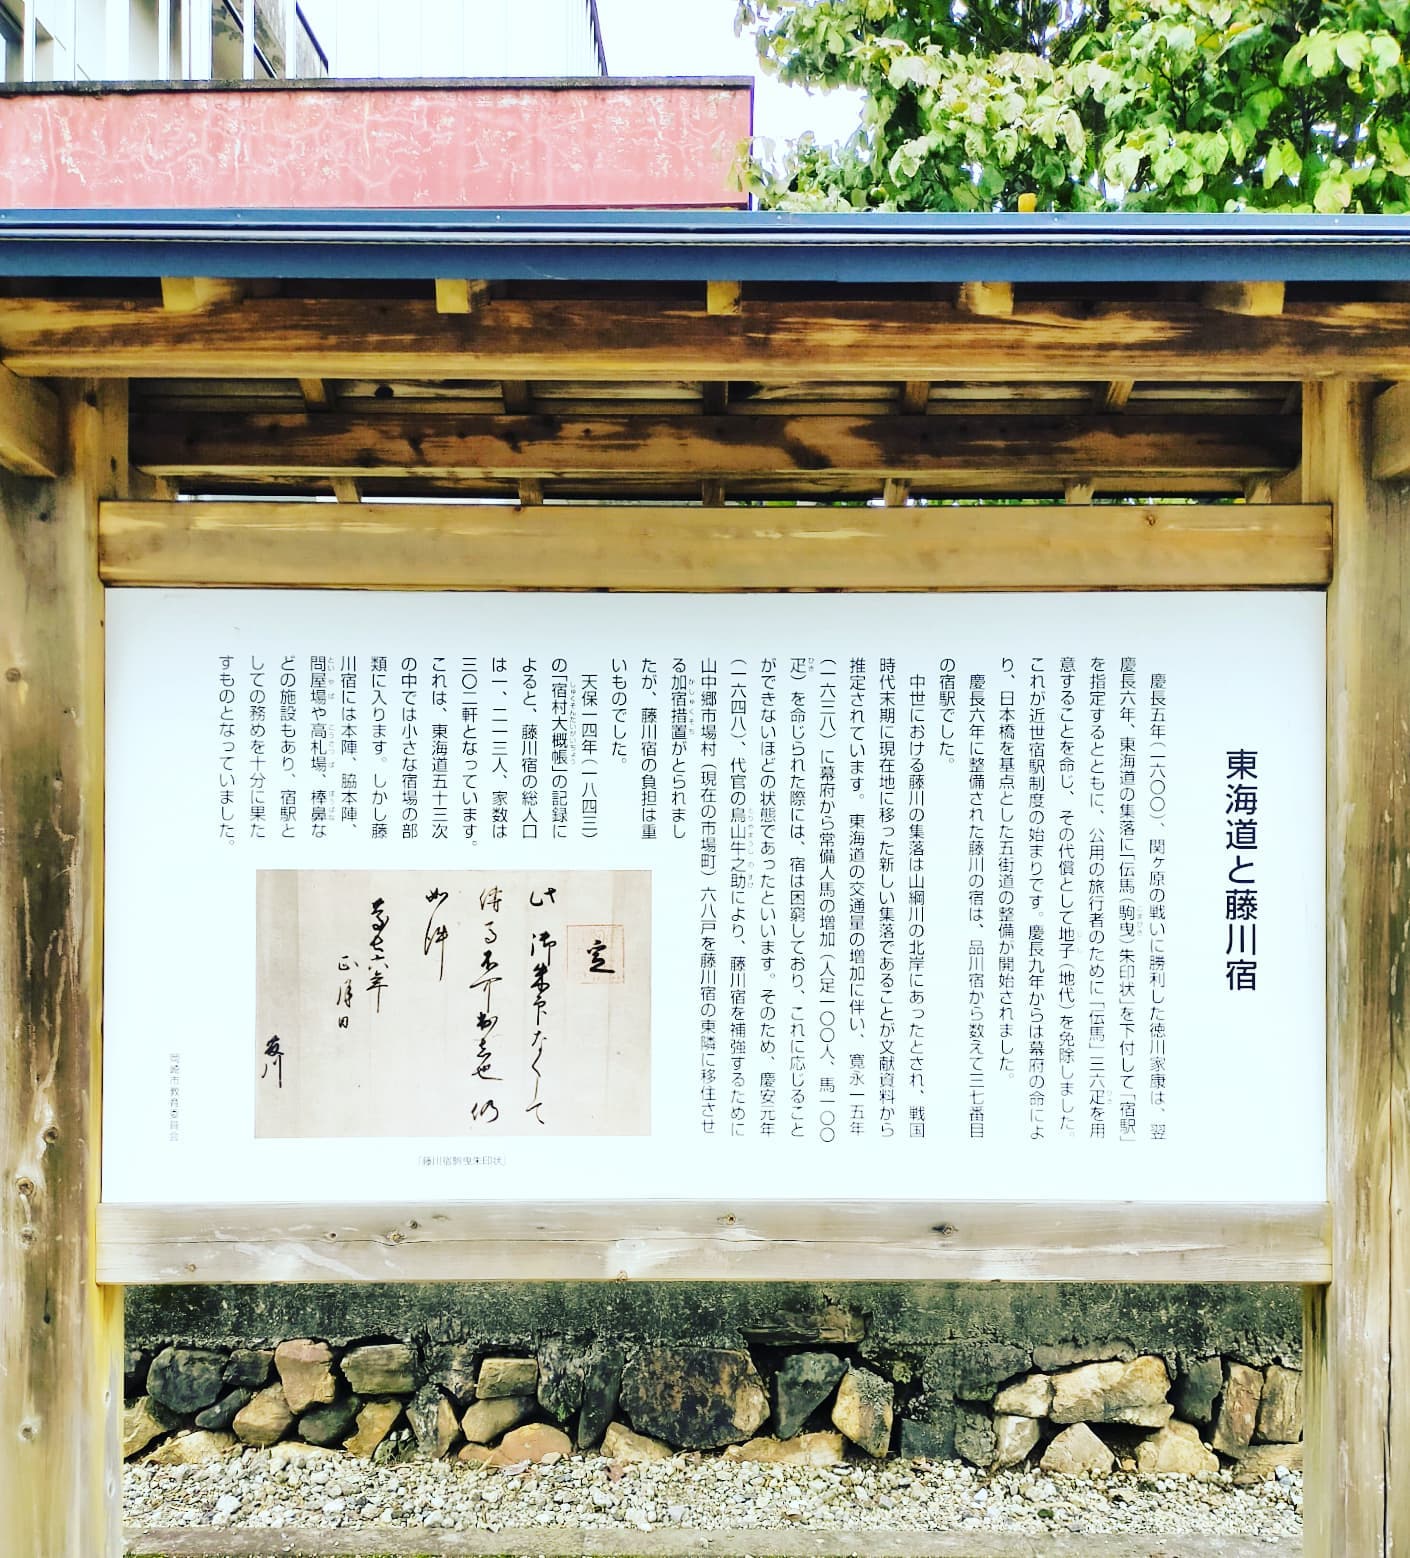 東海道と藤川宿- from Instagram